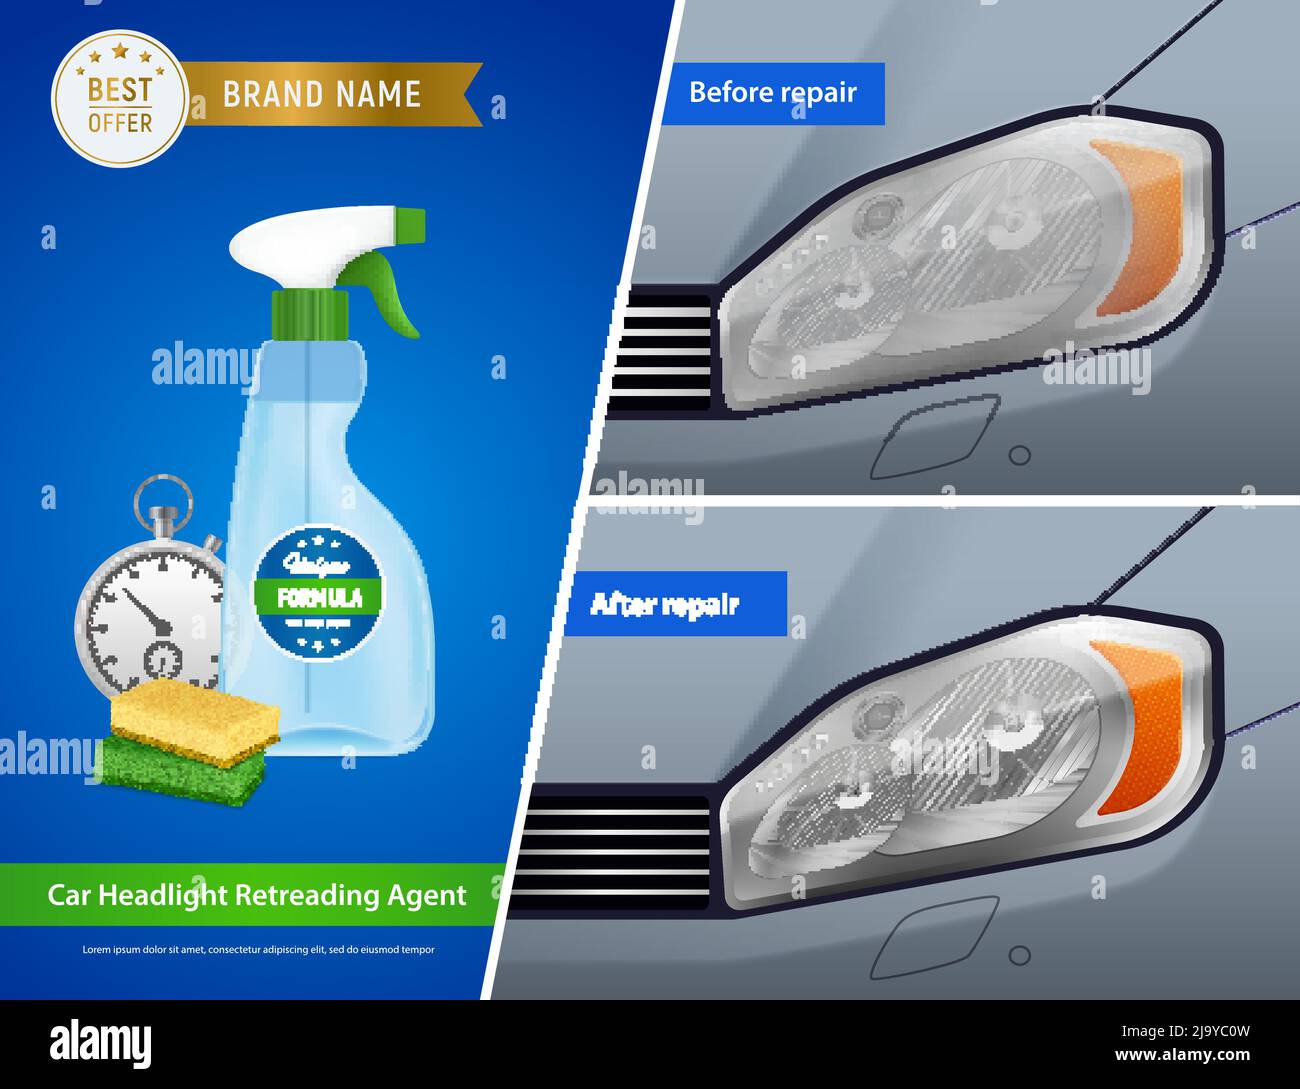 Kit de restauration de phare de voiture annonce 3 compositions réalistes avec agent de nettoyage éponges de pulvérisation avant après illustration vectorielle Illustration de Vecteur